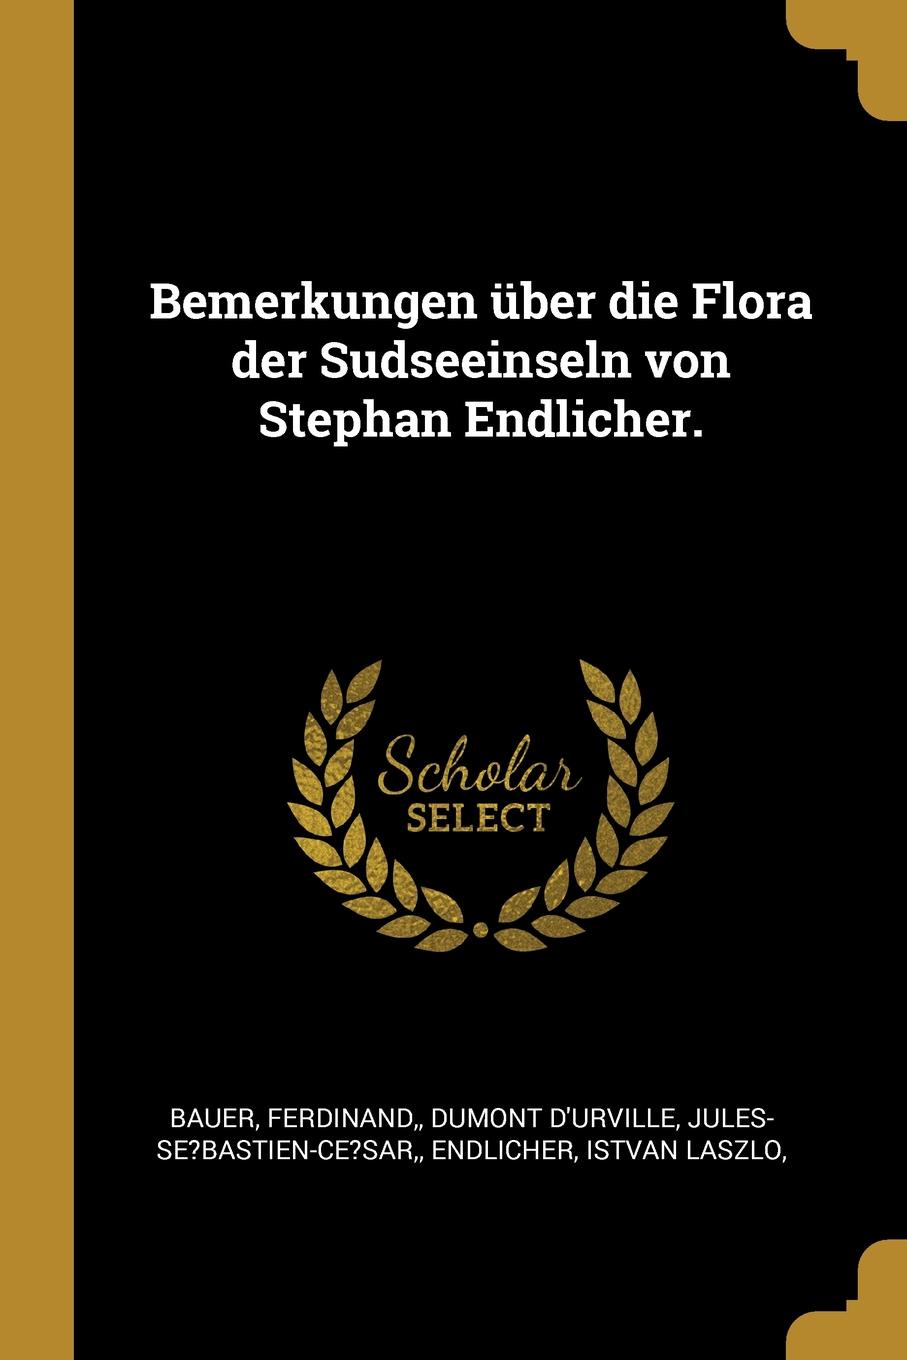 Bemerkungen uber die Flora der Sudseeinseln von Stephan Endlicher.